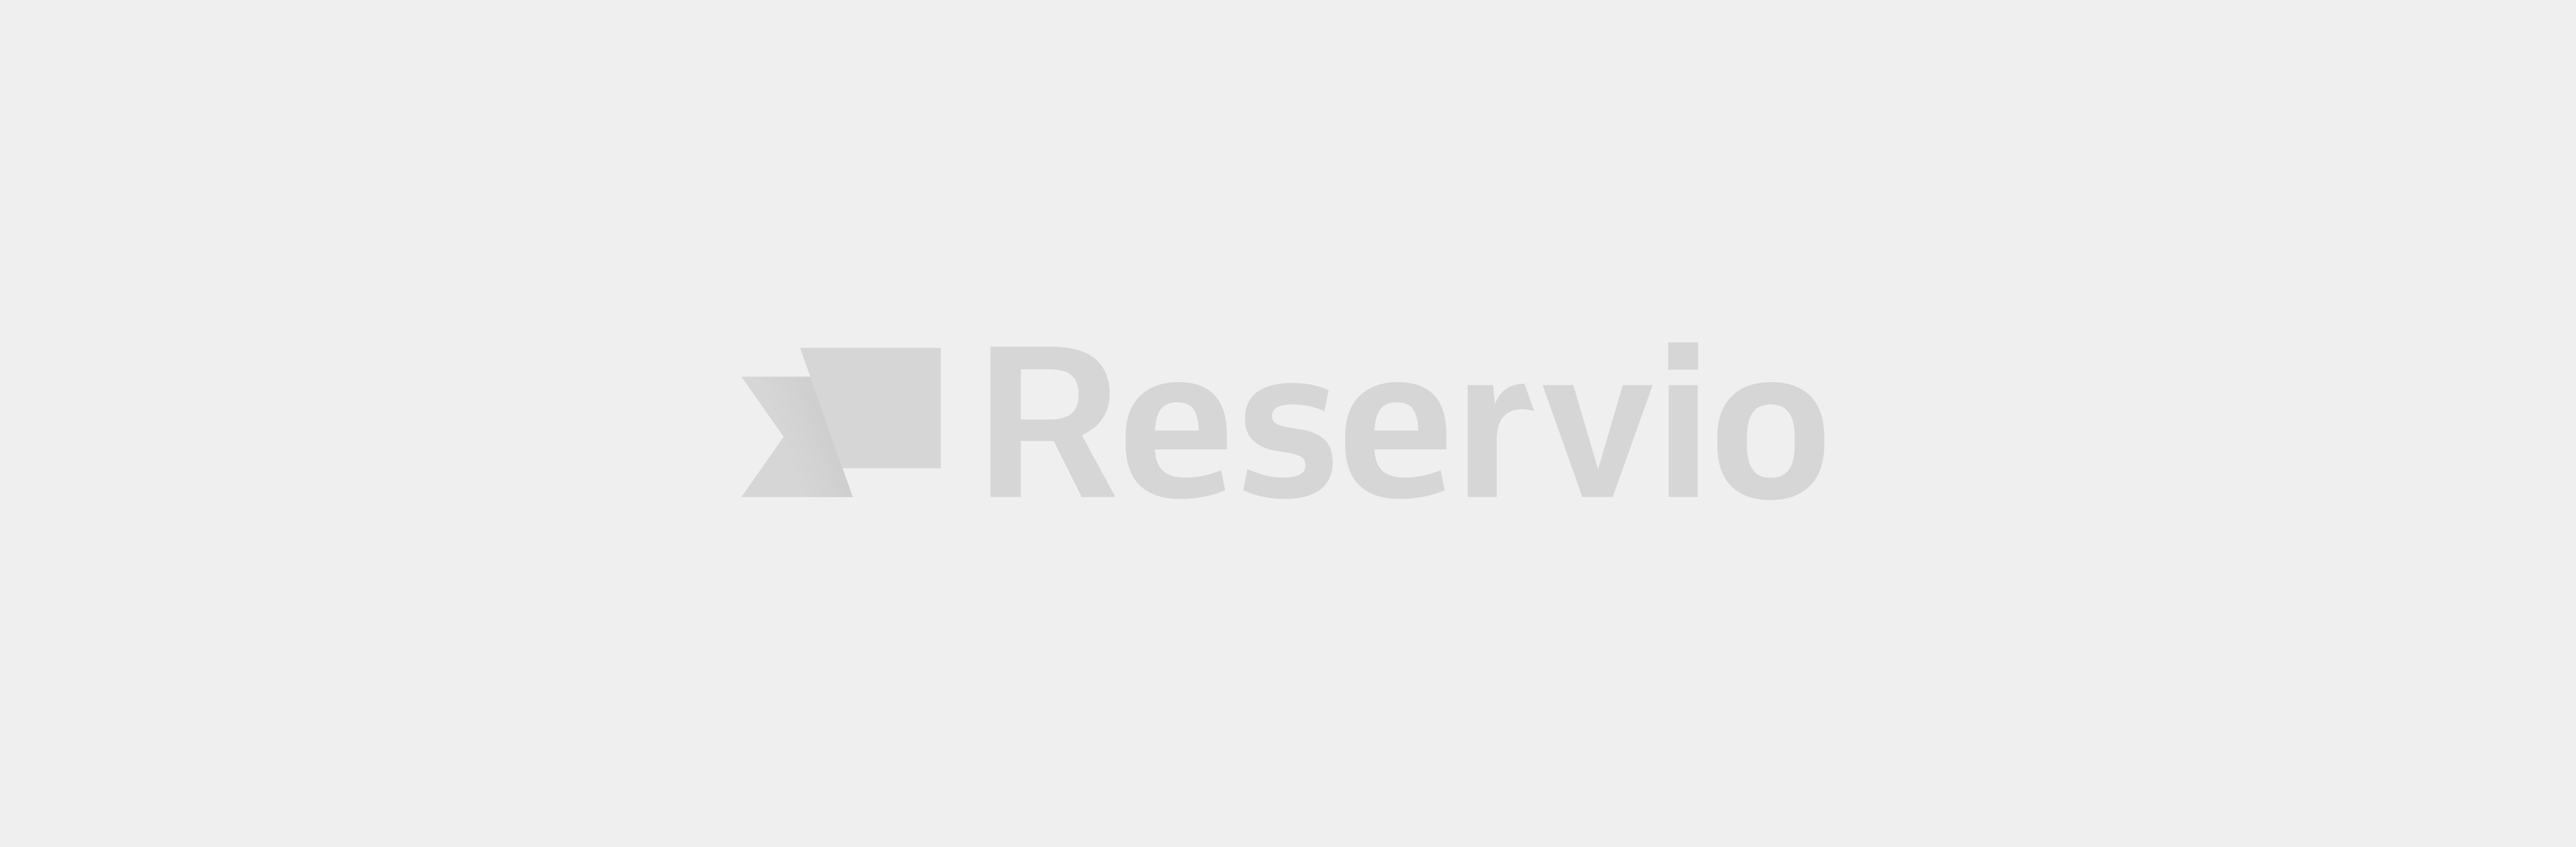 Reservaties - Moorslede